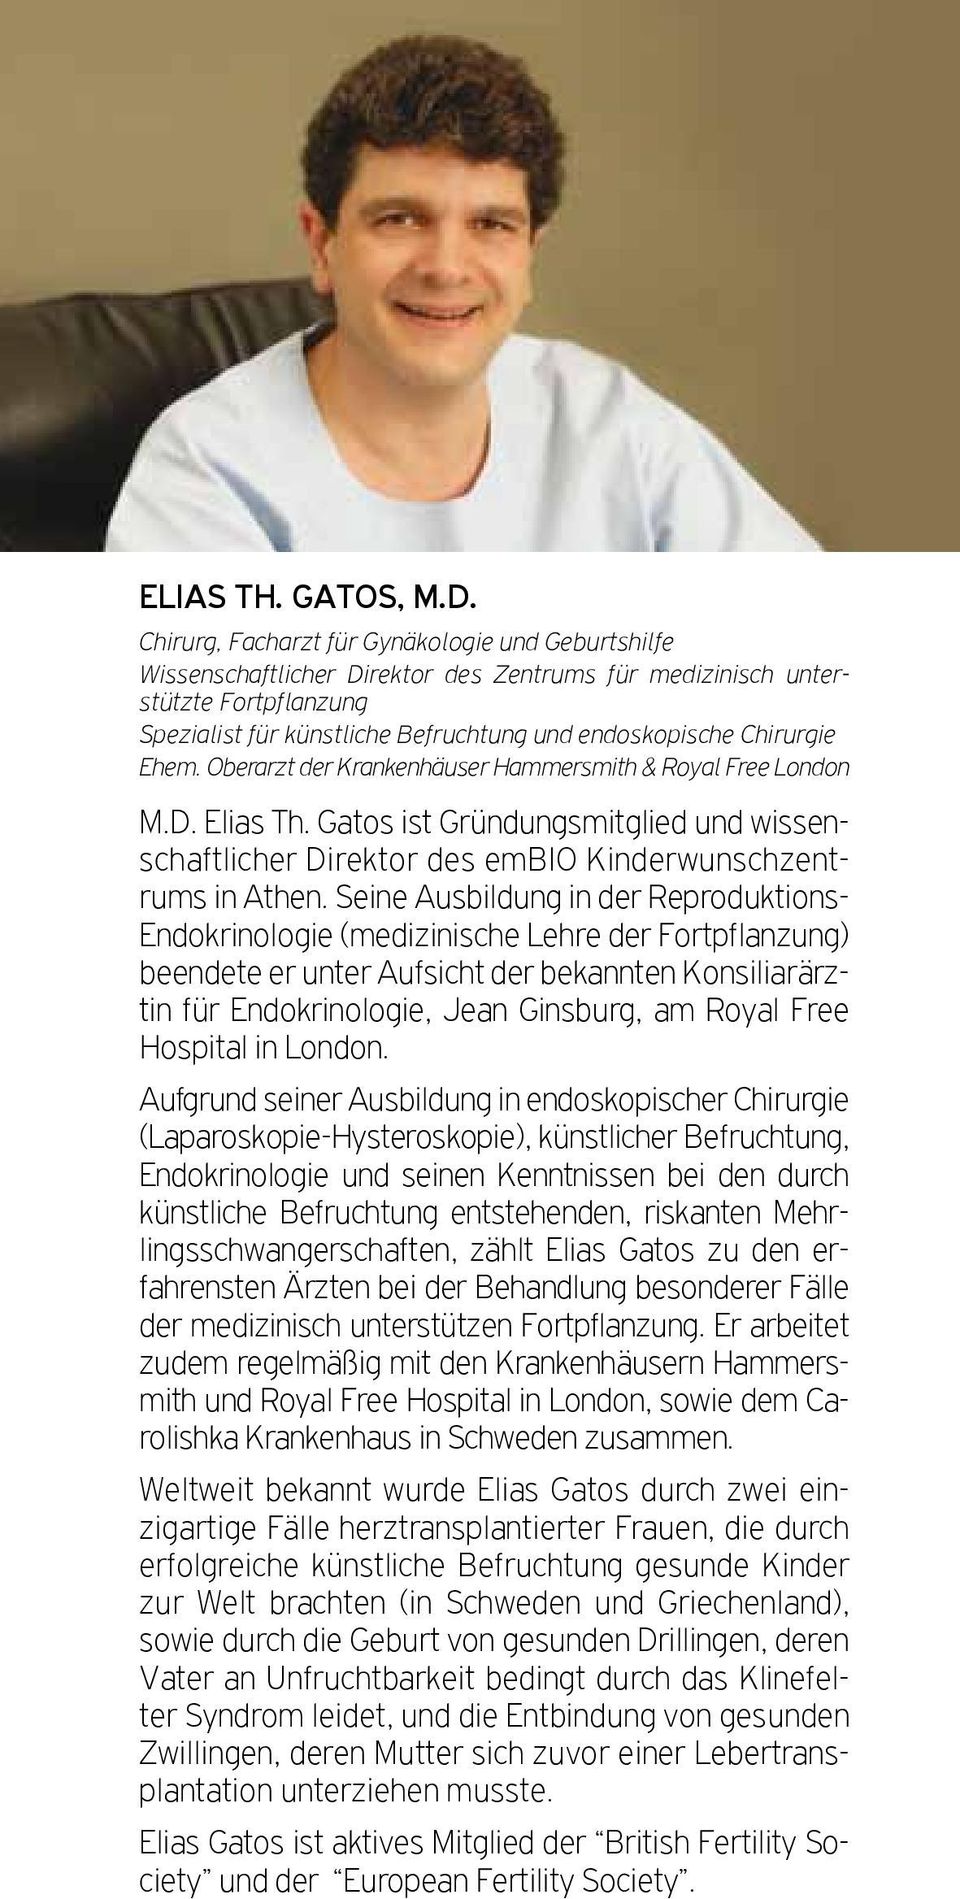 Chirurgie Ehem. Oberarzt der Krankenhäuser Hammersmith & Royal Free London M.D. Elias Th. Gatos ist Gründungsmitglied und wissenschaftlicher Direktor des embio Kinderwunschzentrums in Athen.